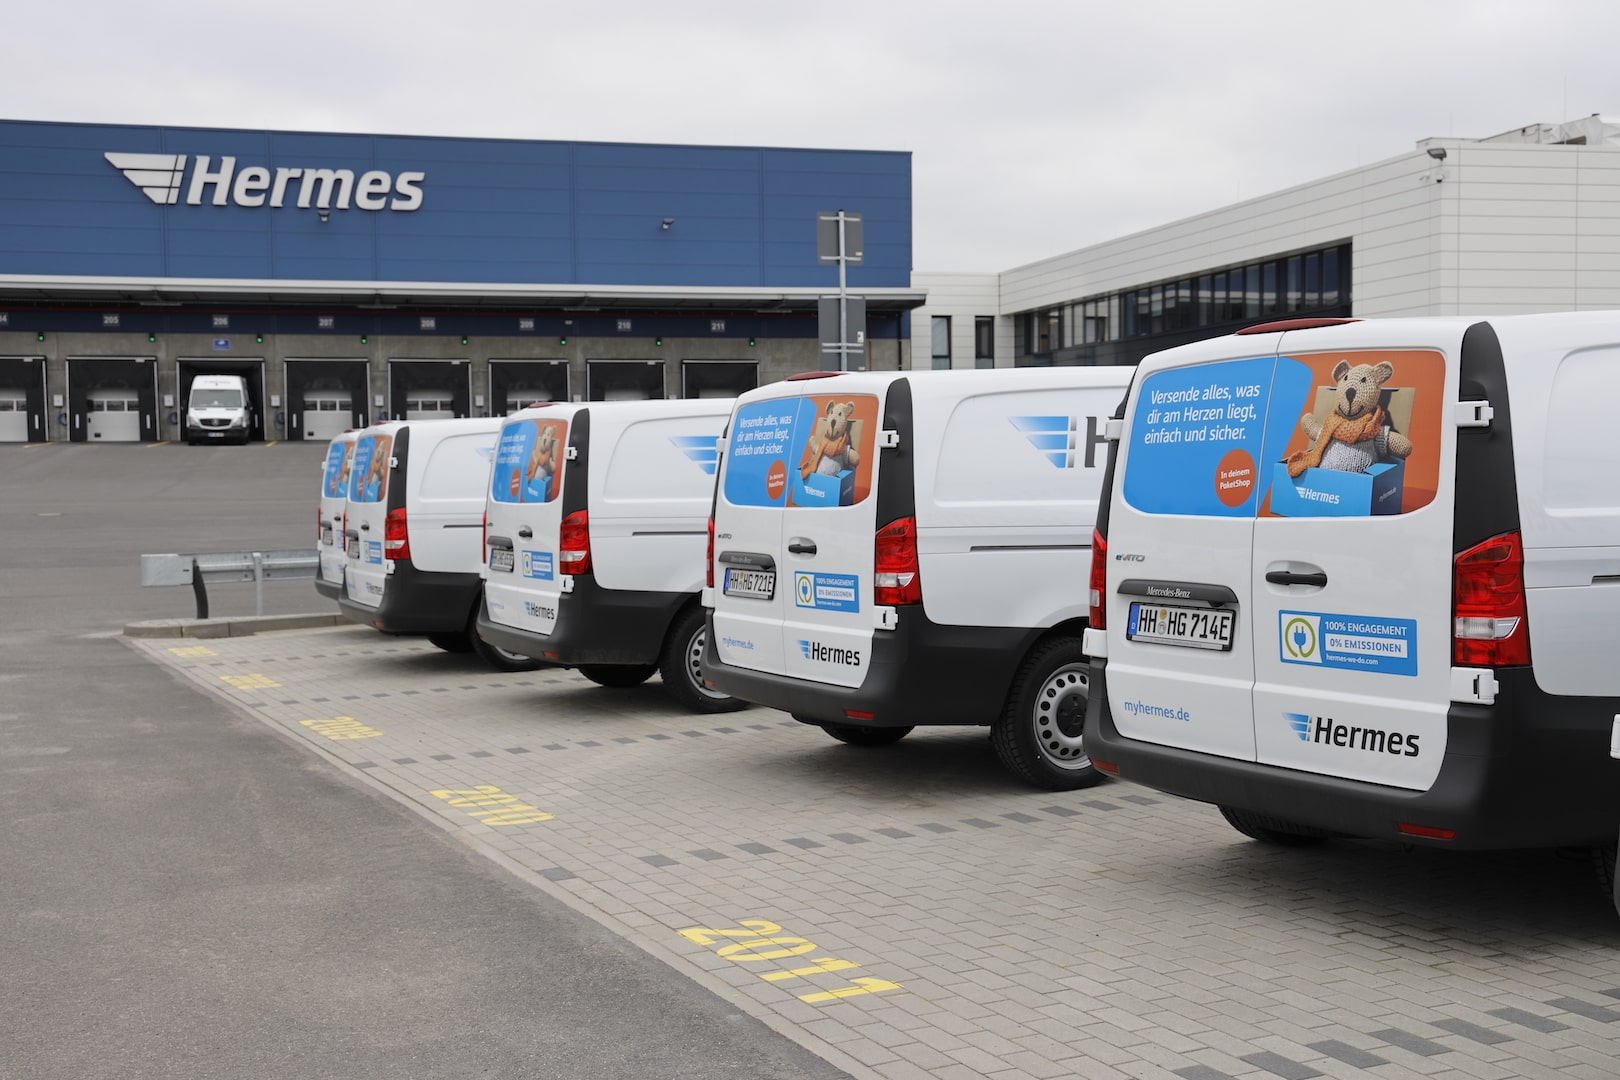 Hermes usiluje o dodávky bez emisí po celém Hamburku